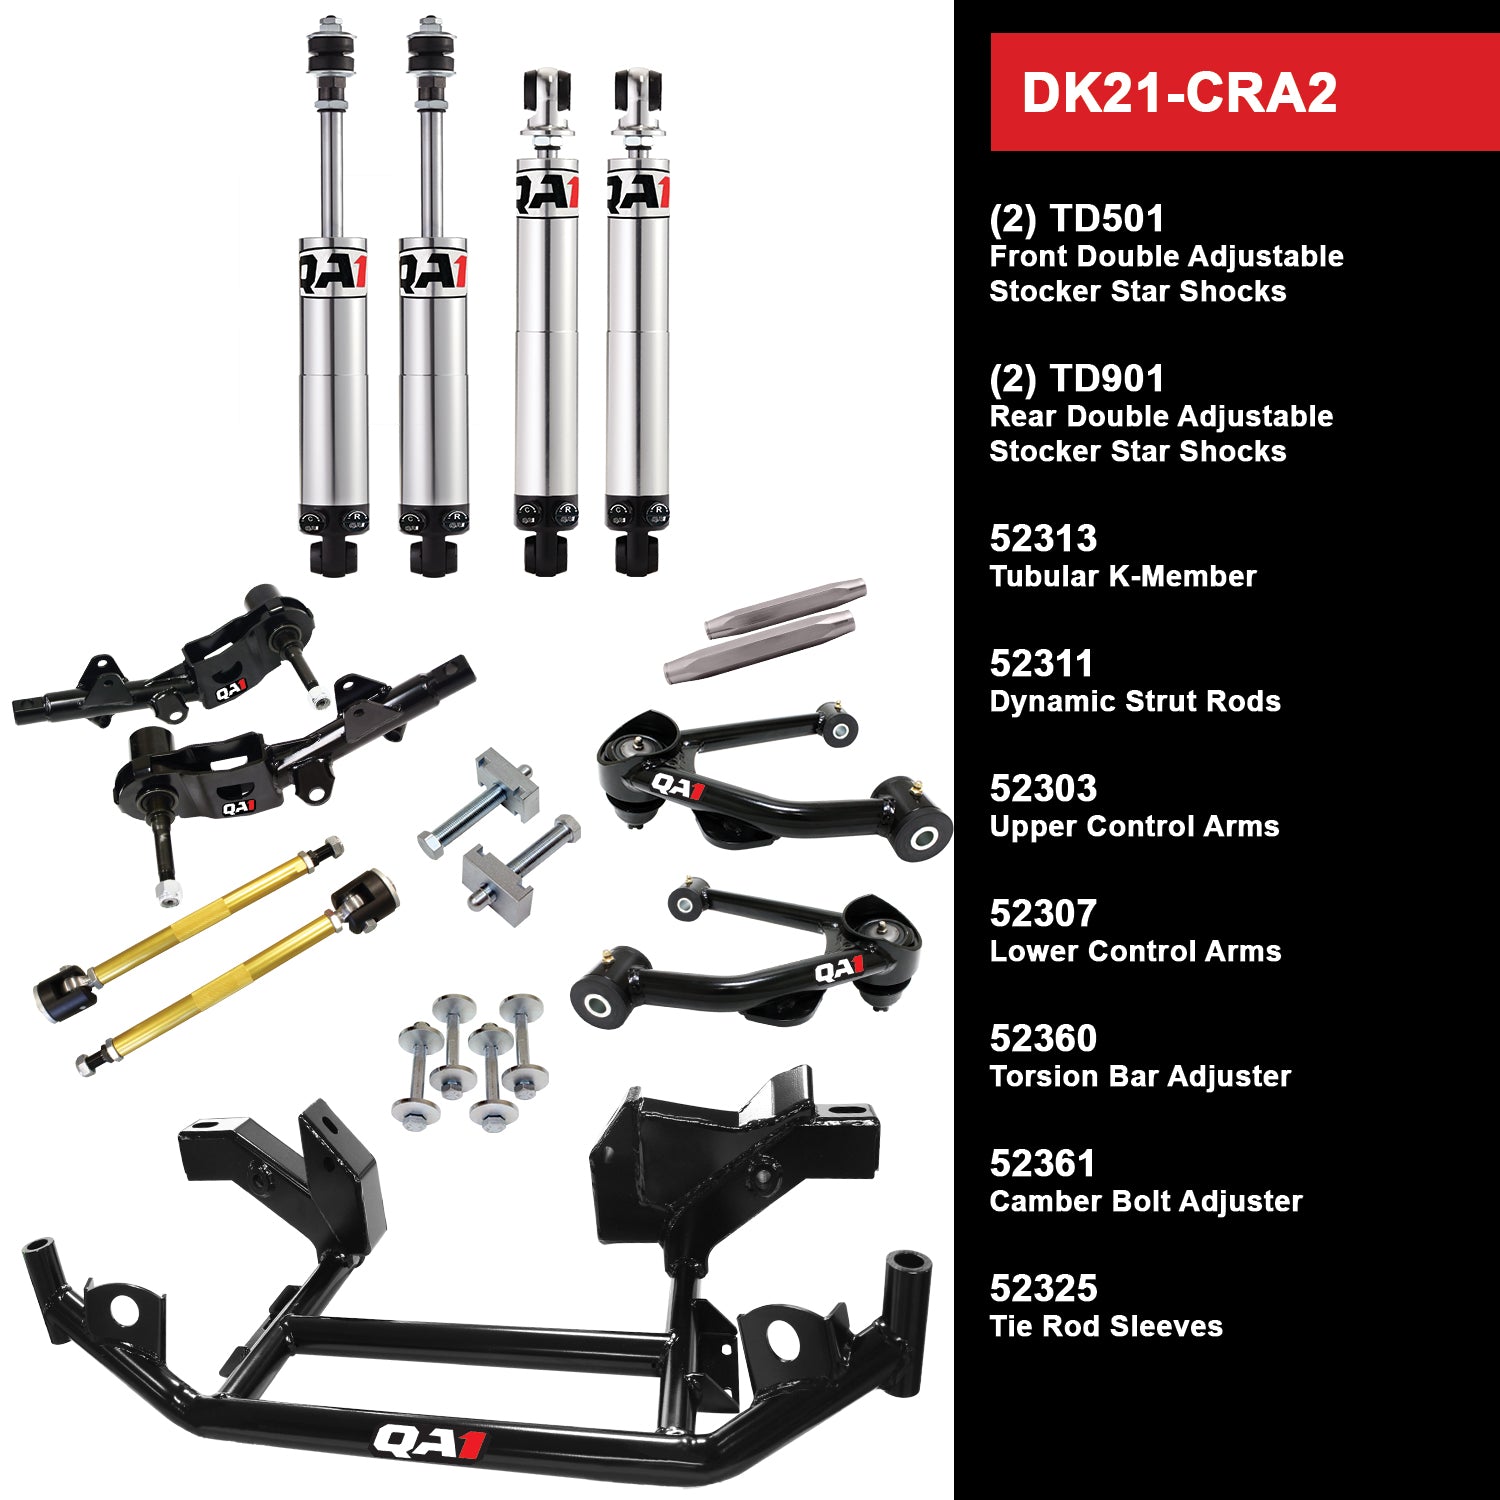 QA1 Drag Kit DK21-CRA2